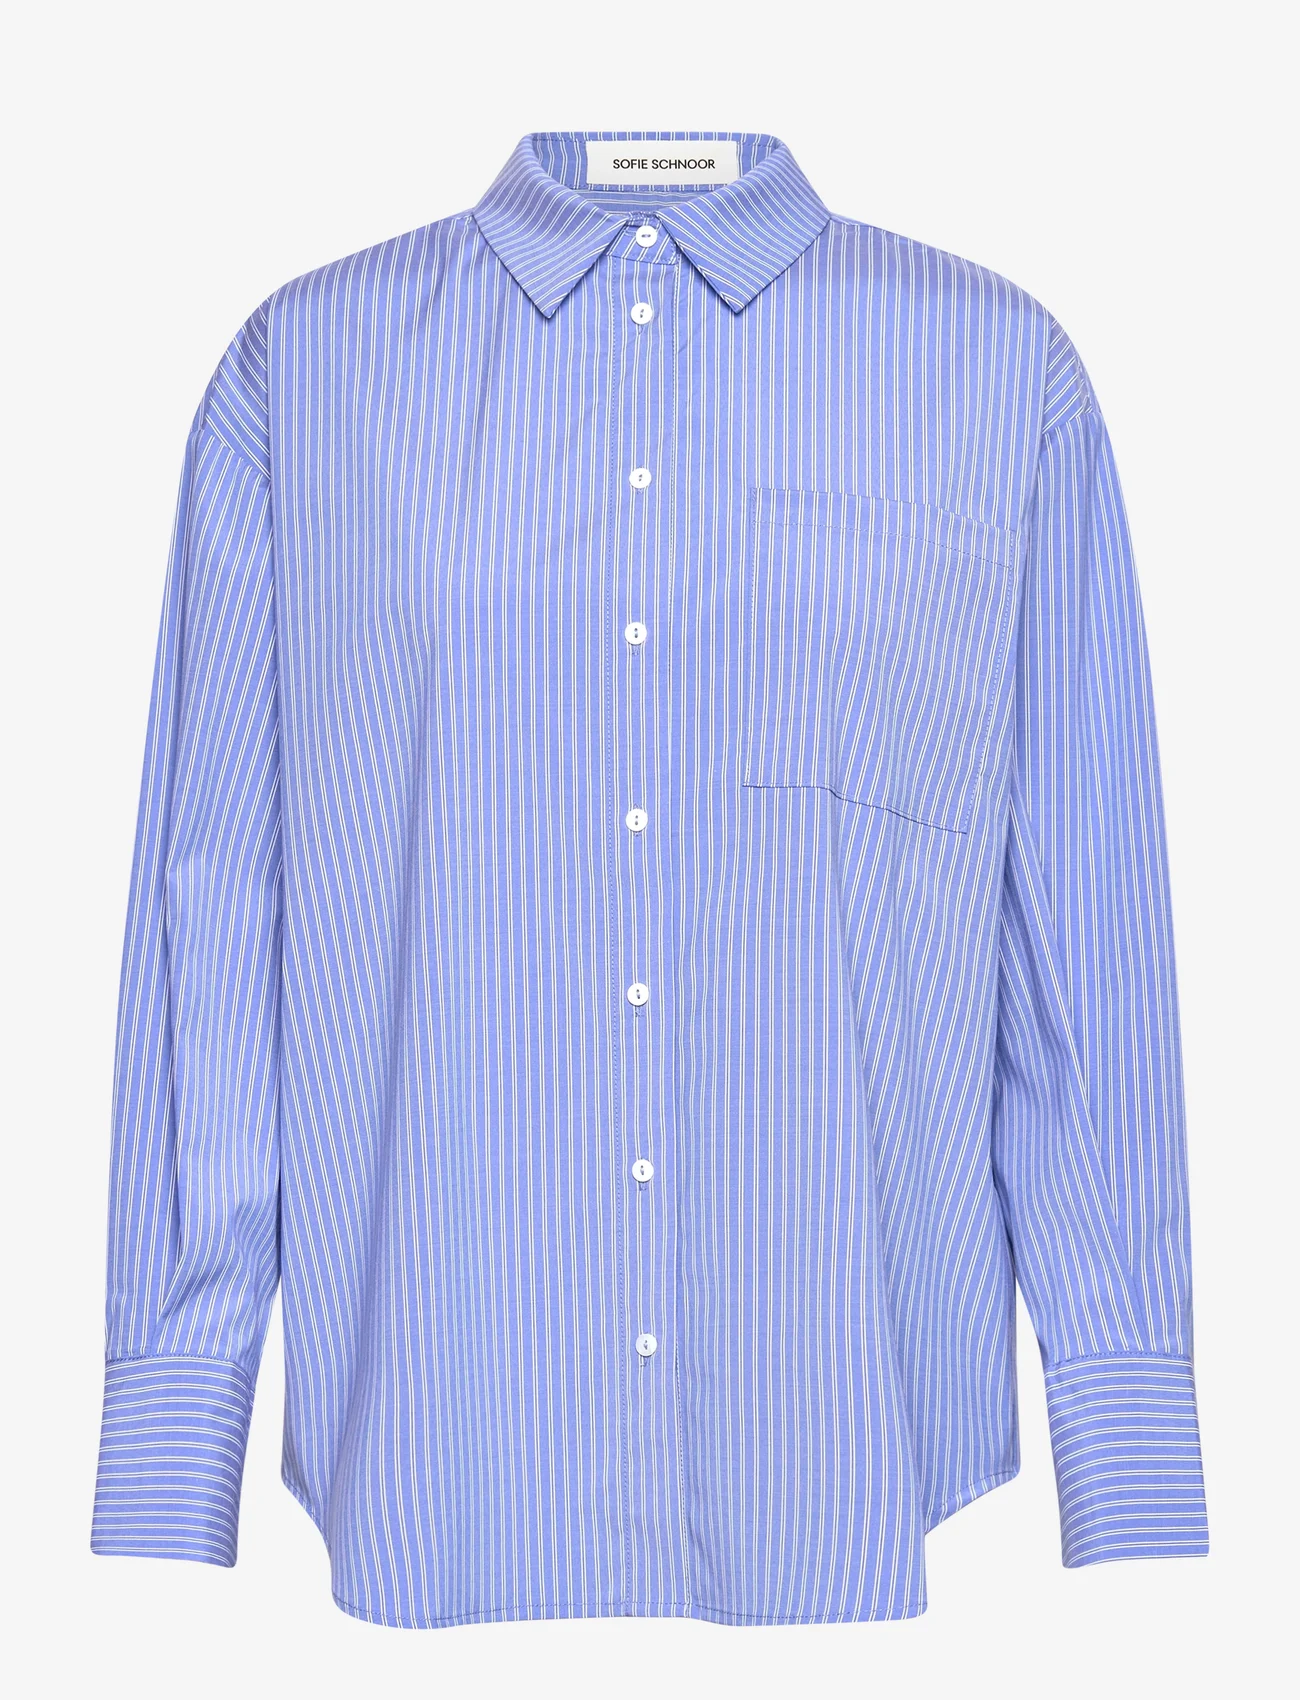 Sofie Schnoor - Shirt - marškiniai ilgomis rankovėmis - blue striped - 0